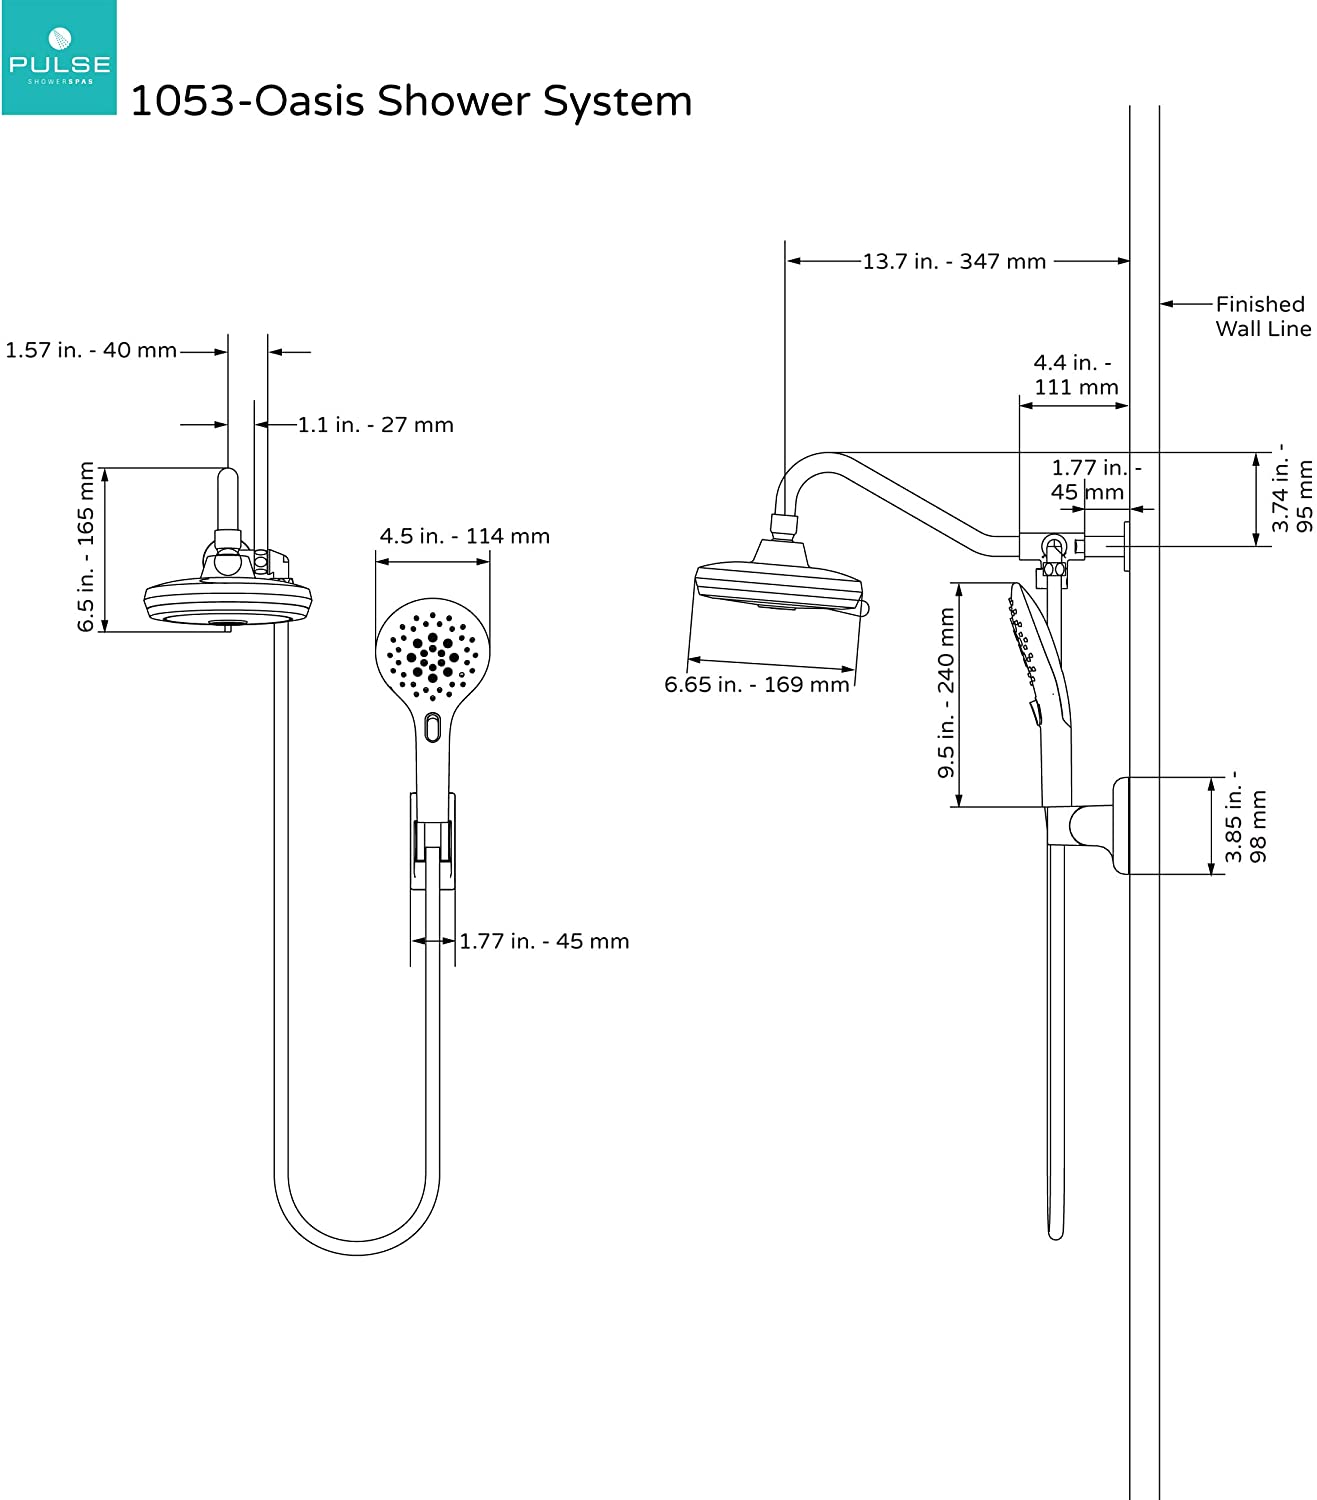 Pulse 1053 Oasis Shower System